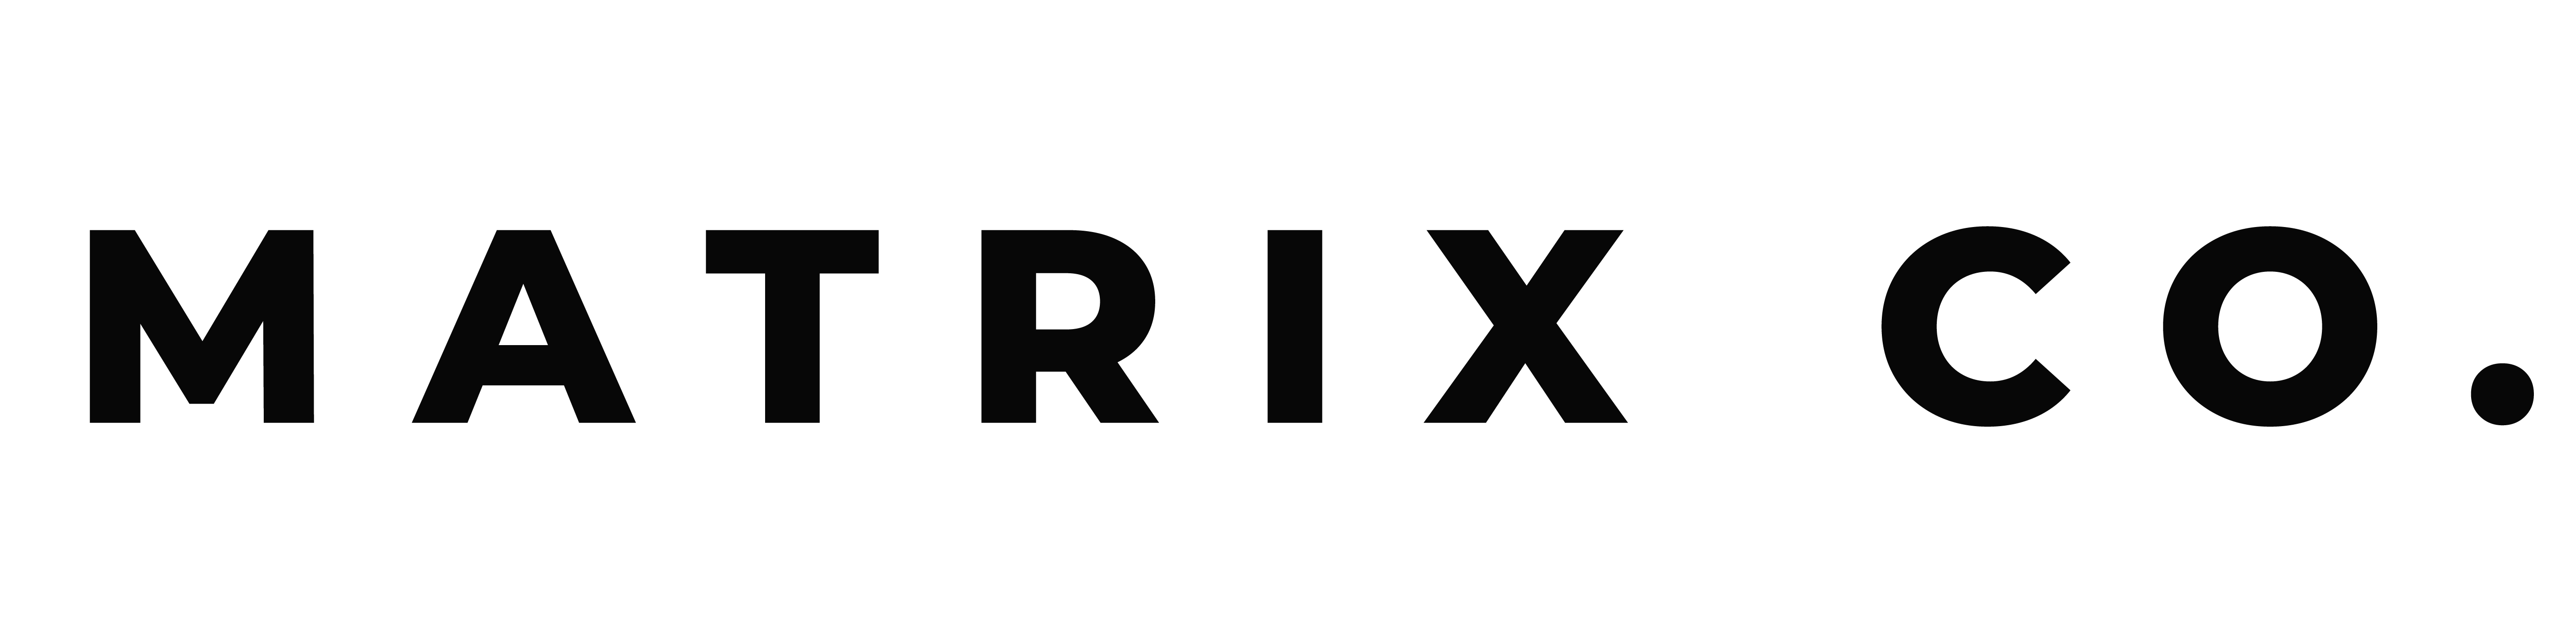 Matrix Co. logo